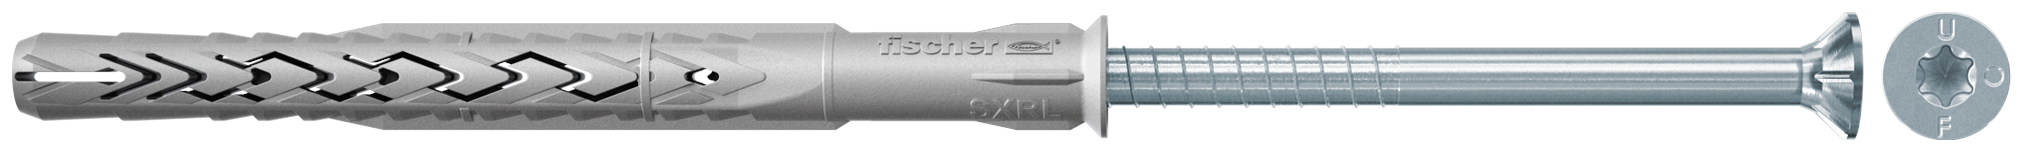 fischer Tasselli prolungati SXRL 14X200 T (1 Pz.) Tassello prolungato in nylon con marcatura CE con vite premontata T.S.P. impronta torx.